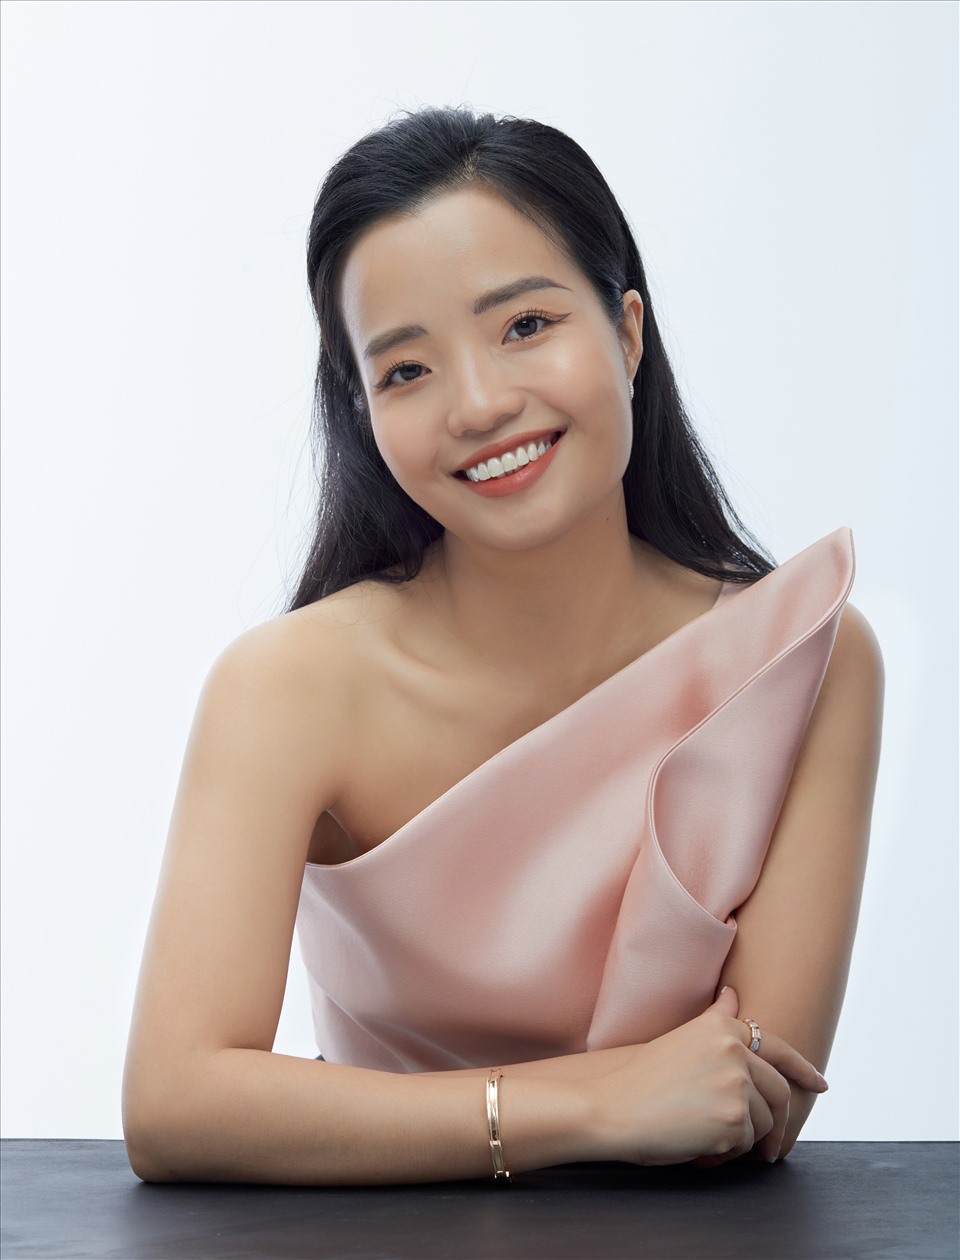 Nhân lực của ngành bán lẻ, đặc biệt bán lẻ thời trang, cực kỳ hạn chế cho nên muốn thương hiệu Việt phát triển được thì việc tiếp nhận nhân sự mới, đào tạo và đi đường dài là câu chuyện quan trọng nhất -Bà Lê Linh, CEO IVY moda nói.